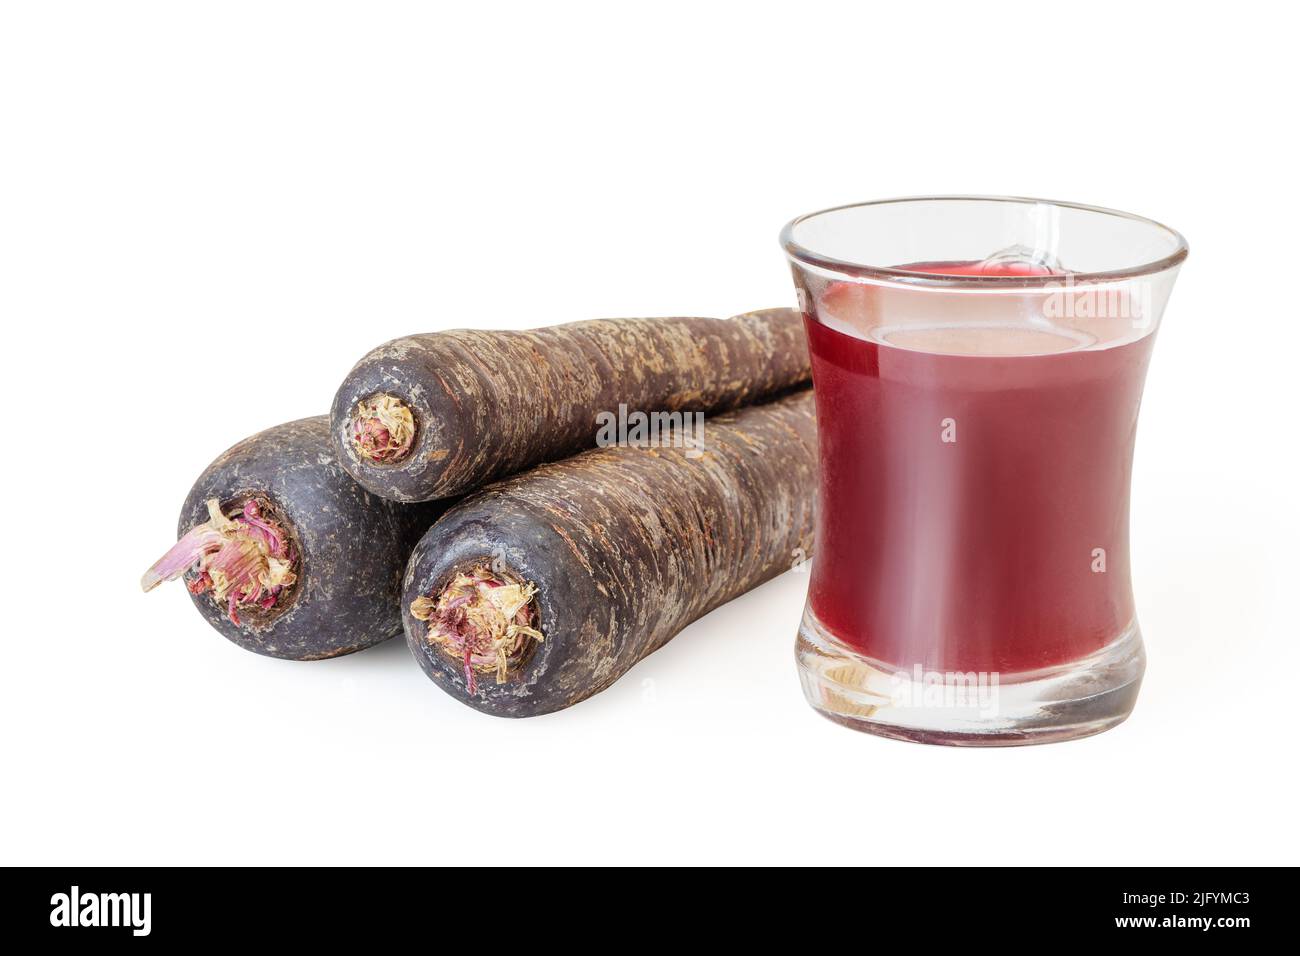 Beliebtes türkisches traditionelles Getränk Salgam oder Shalgam, hergestellt aus fermentiertem Saft von Rüben und schwarzen Karottenwurzeln. Heilung von Kater und Verdauung PR Stockfoto